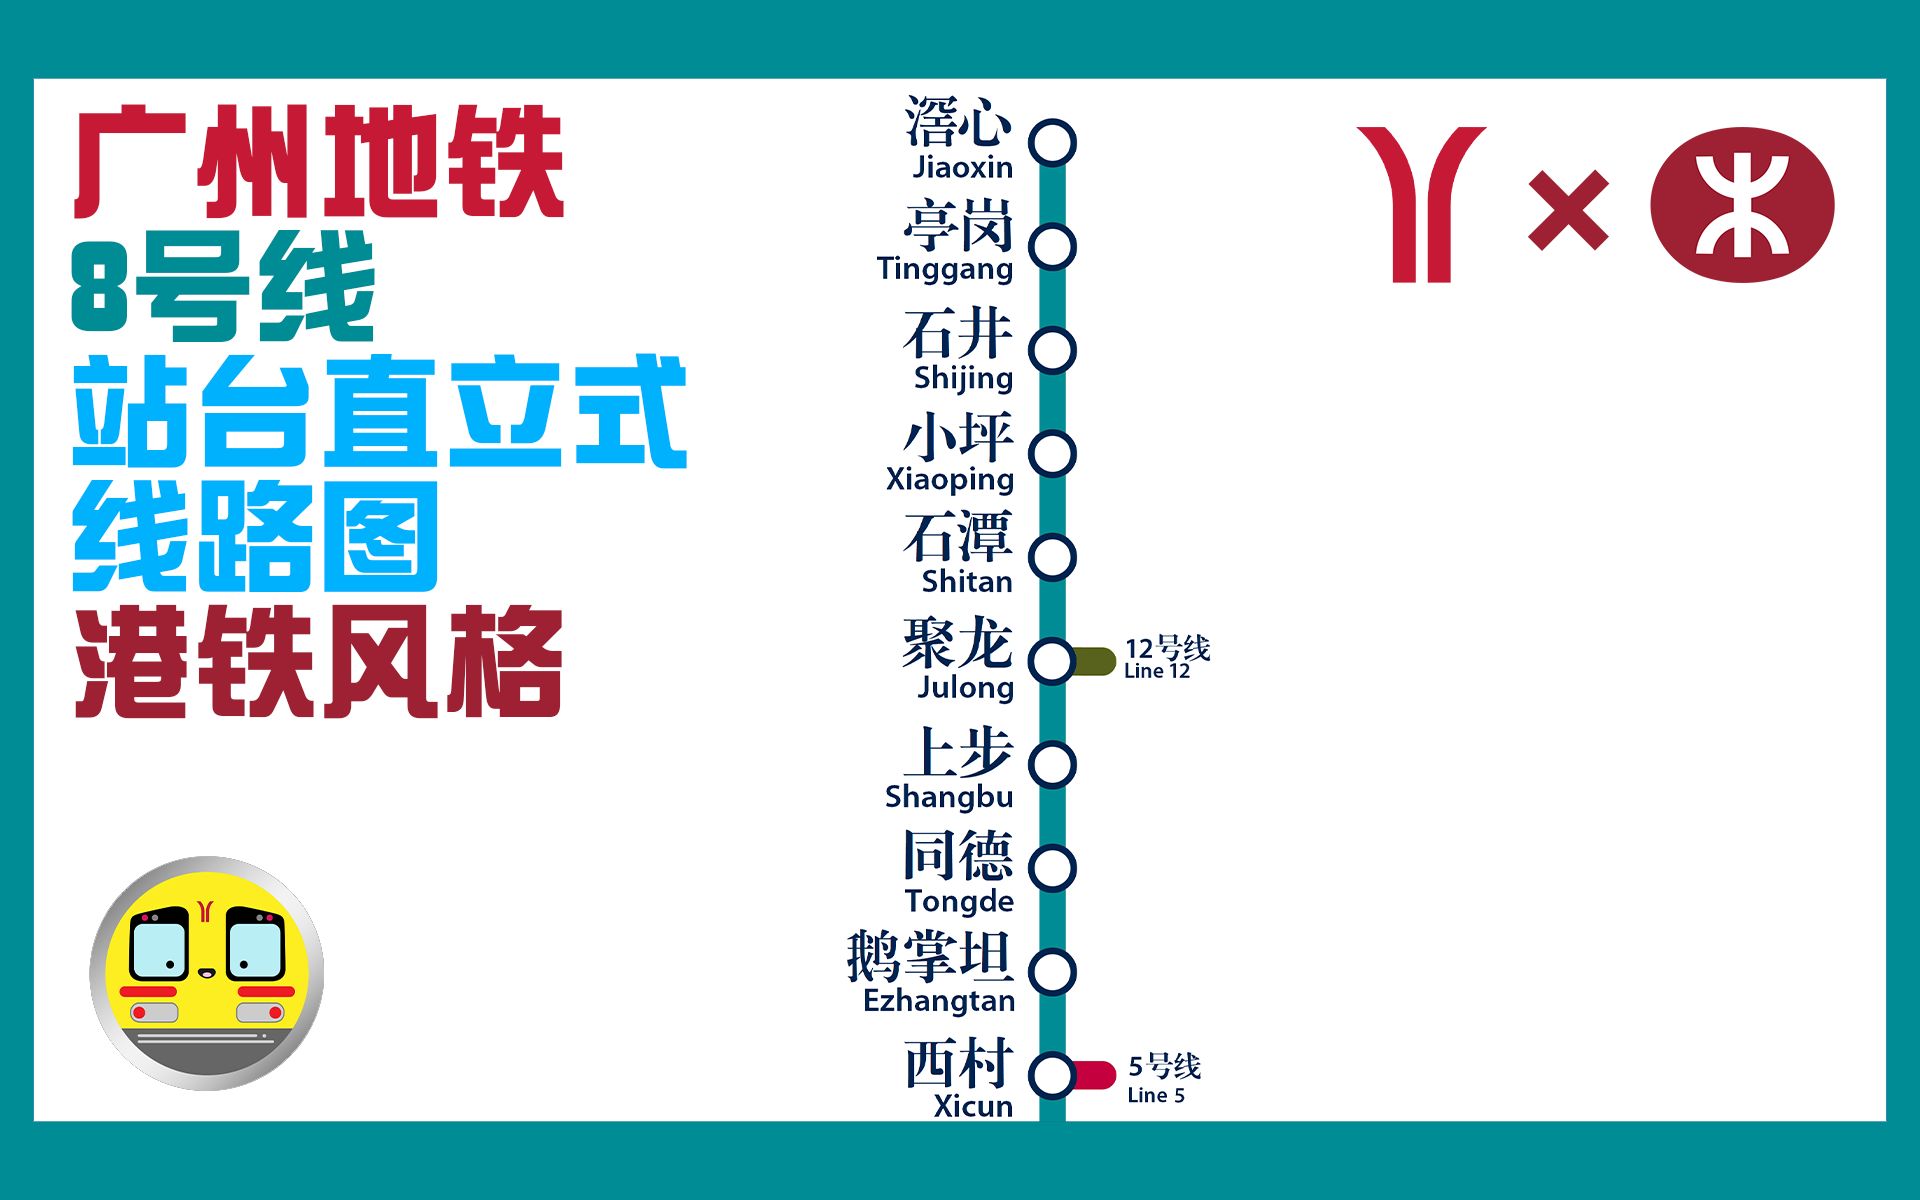 【线路图制作】广州地铁8号线(未来)站台直立式线路图(港铁风格)